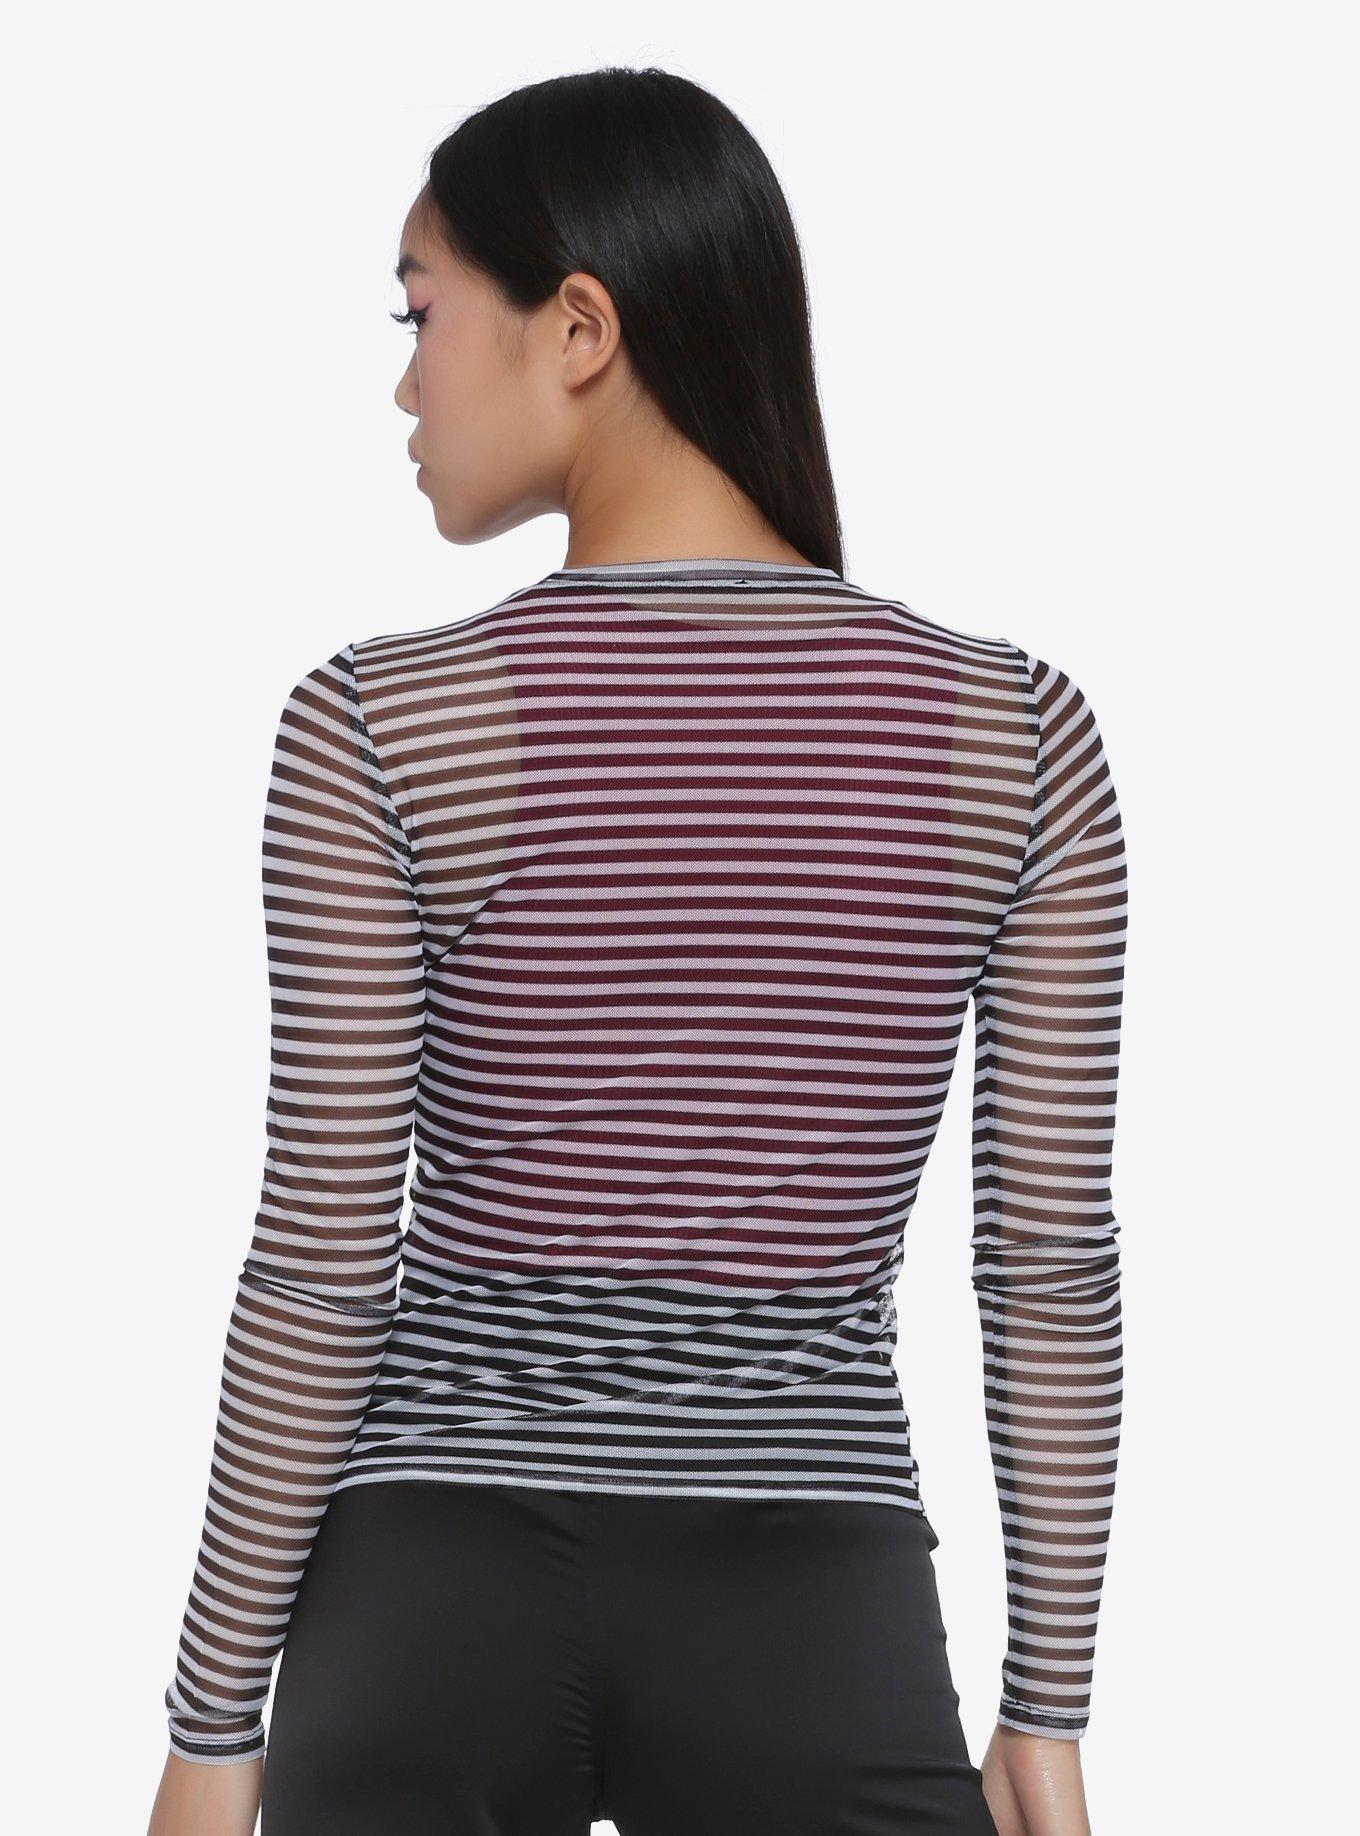 Black & White Stripe Mesh Girls Long-Sleeve Top, WHITE, alternate